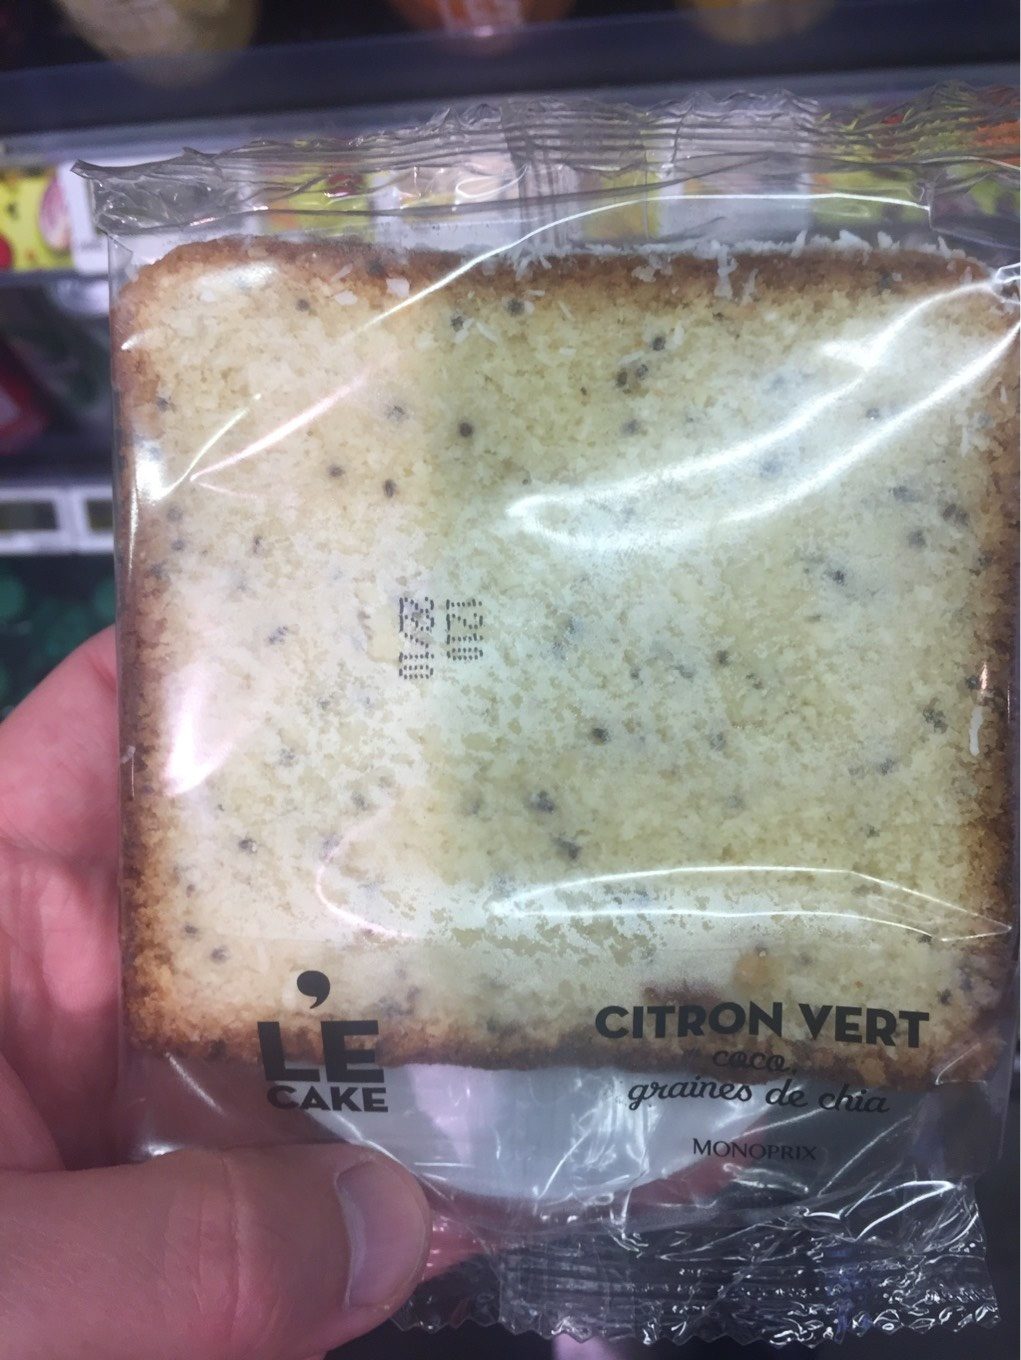 ´le cake citron vert - Product - fr